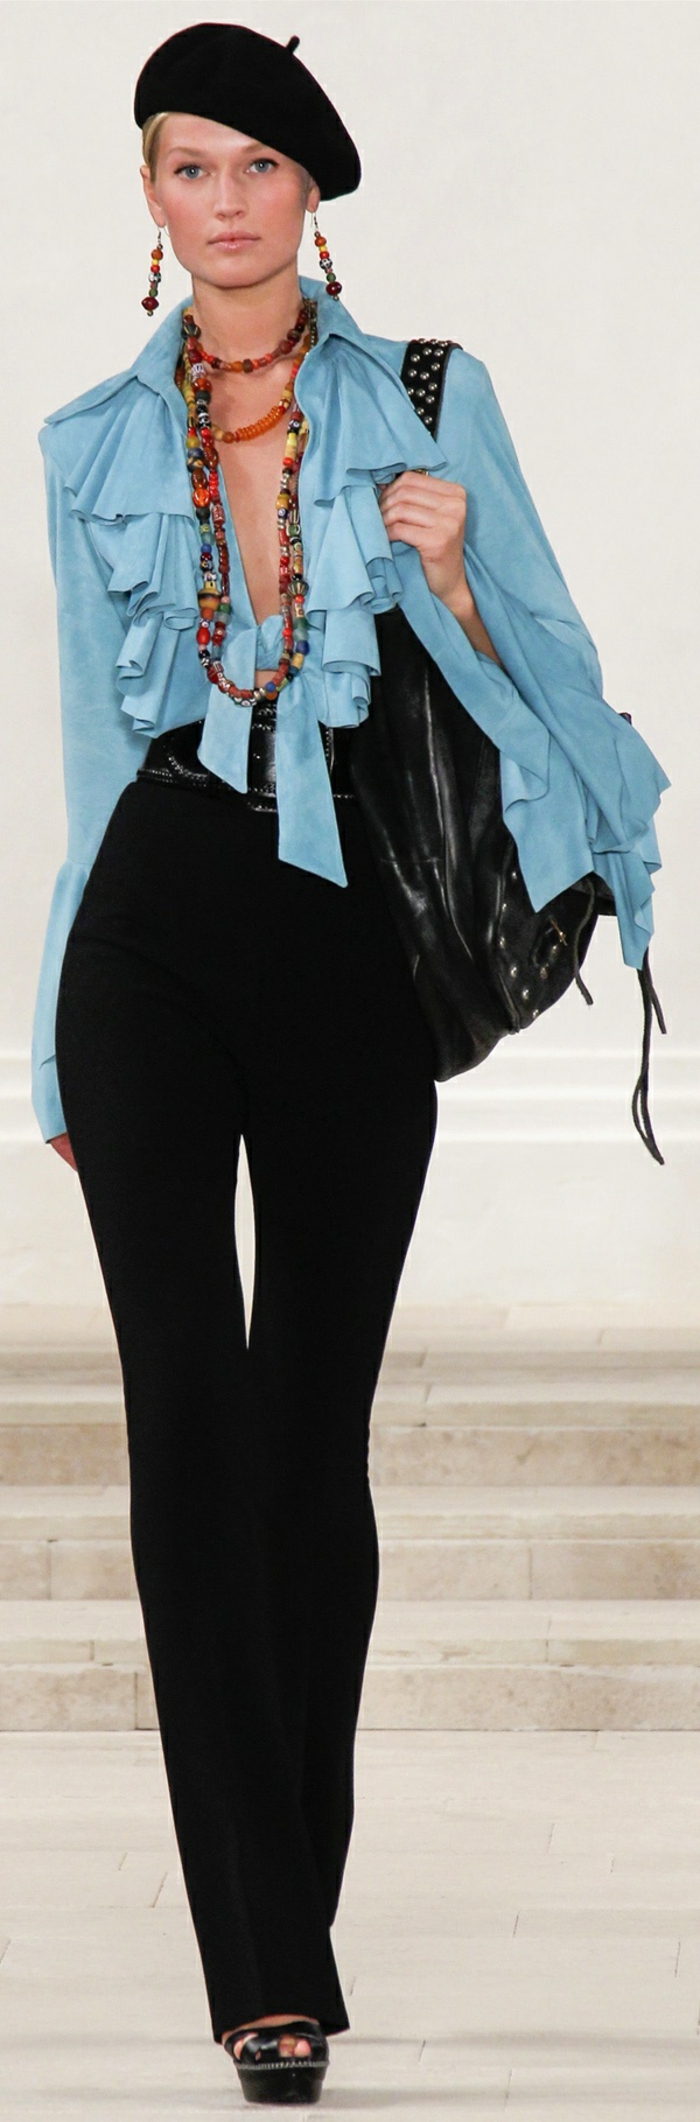 Ralph Lauren Collection 2013 de la boina del casquillo negro-clásico modelo de la joyería camisa azul y pantalones negros de cuero del caso